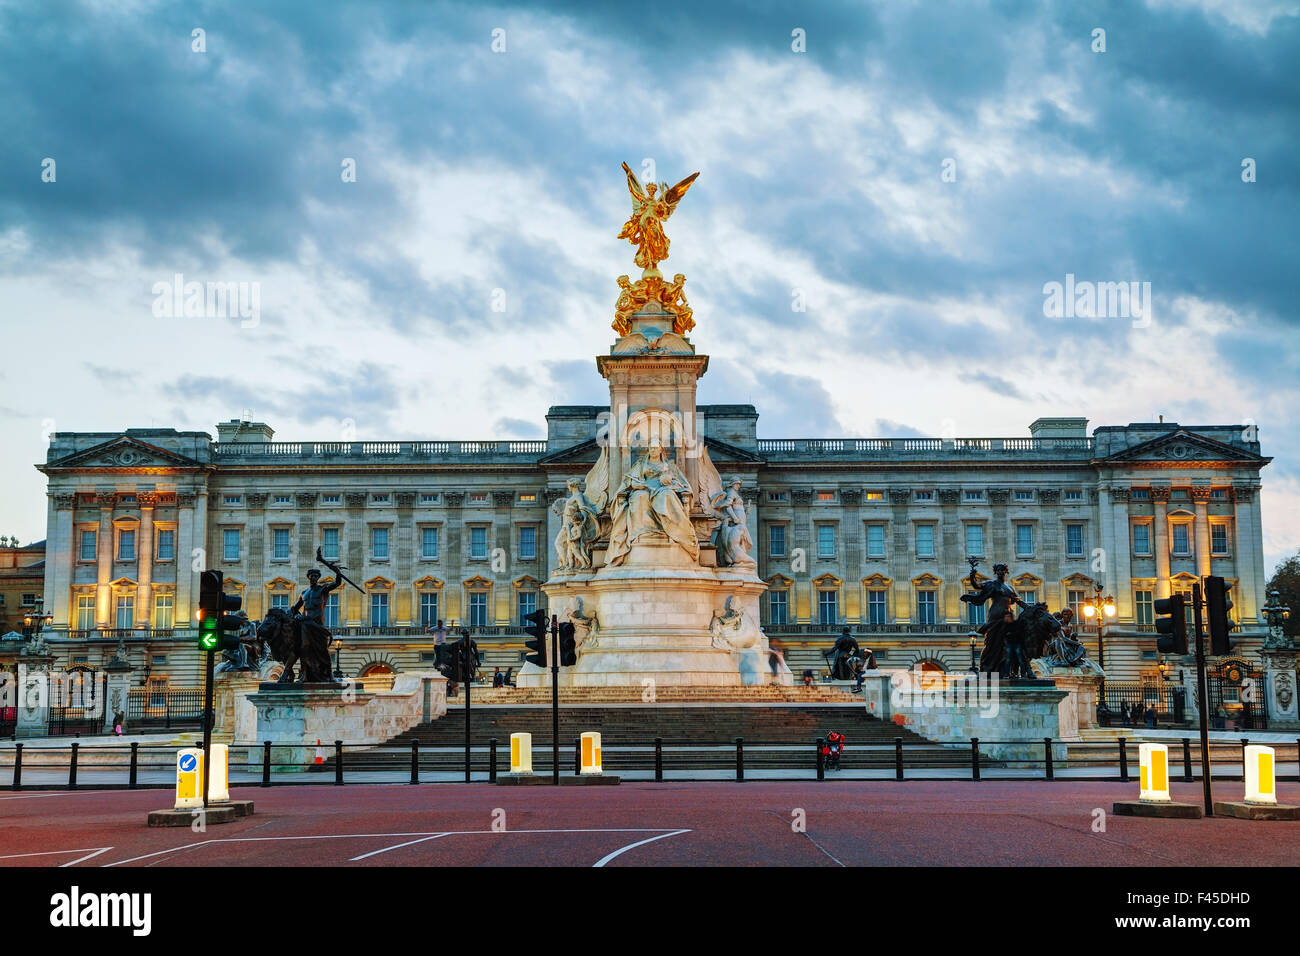 Le palais de Buckingham à Londres, Grande-Bretagne Banque D'Images